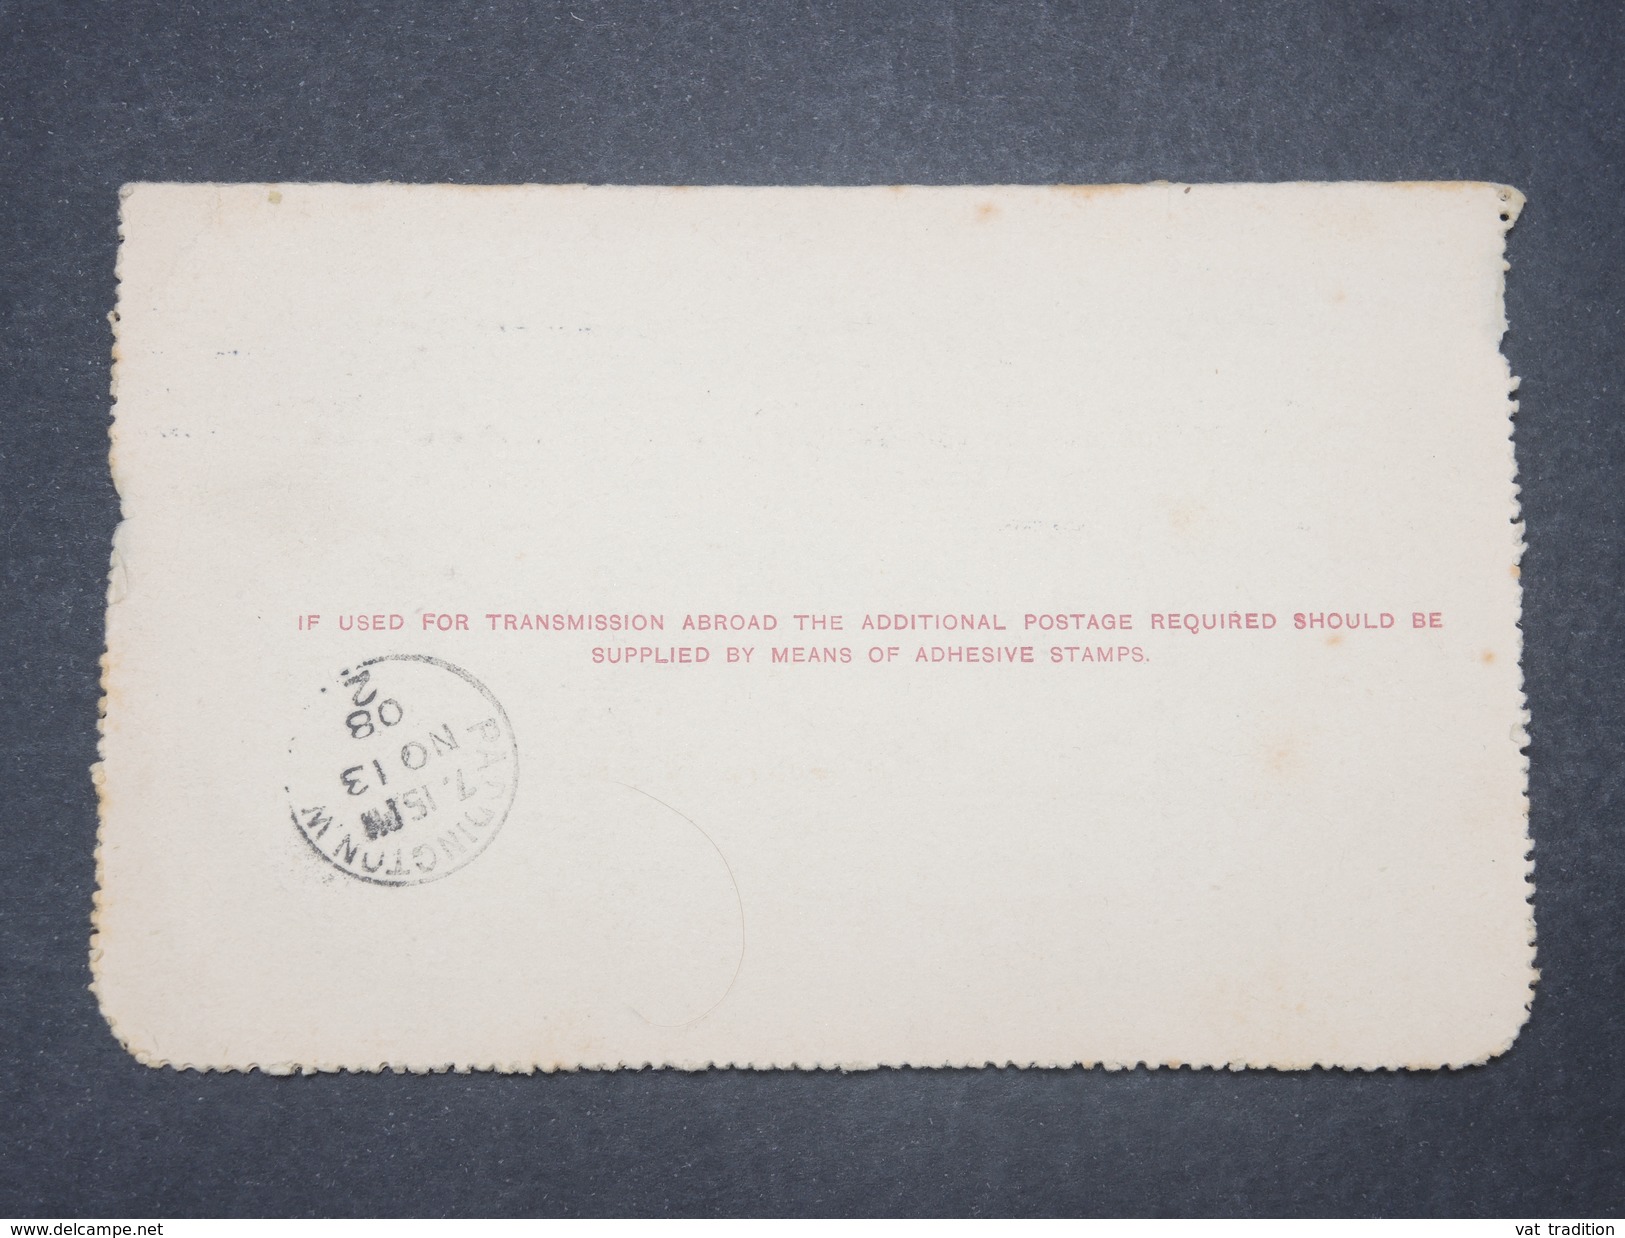 NOUVELLE ZÉLANDE - Entier Postal  De Auckland En 1908 Pour Londres - L 9579 - Covers & Documents